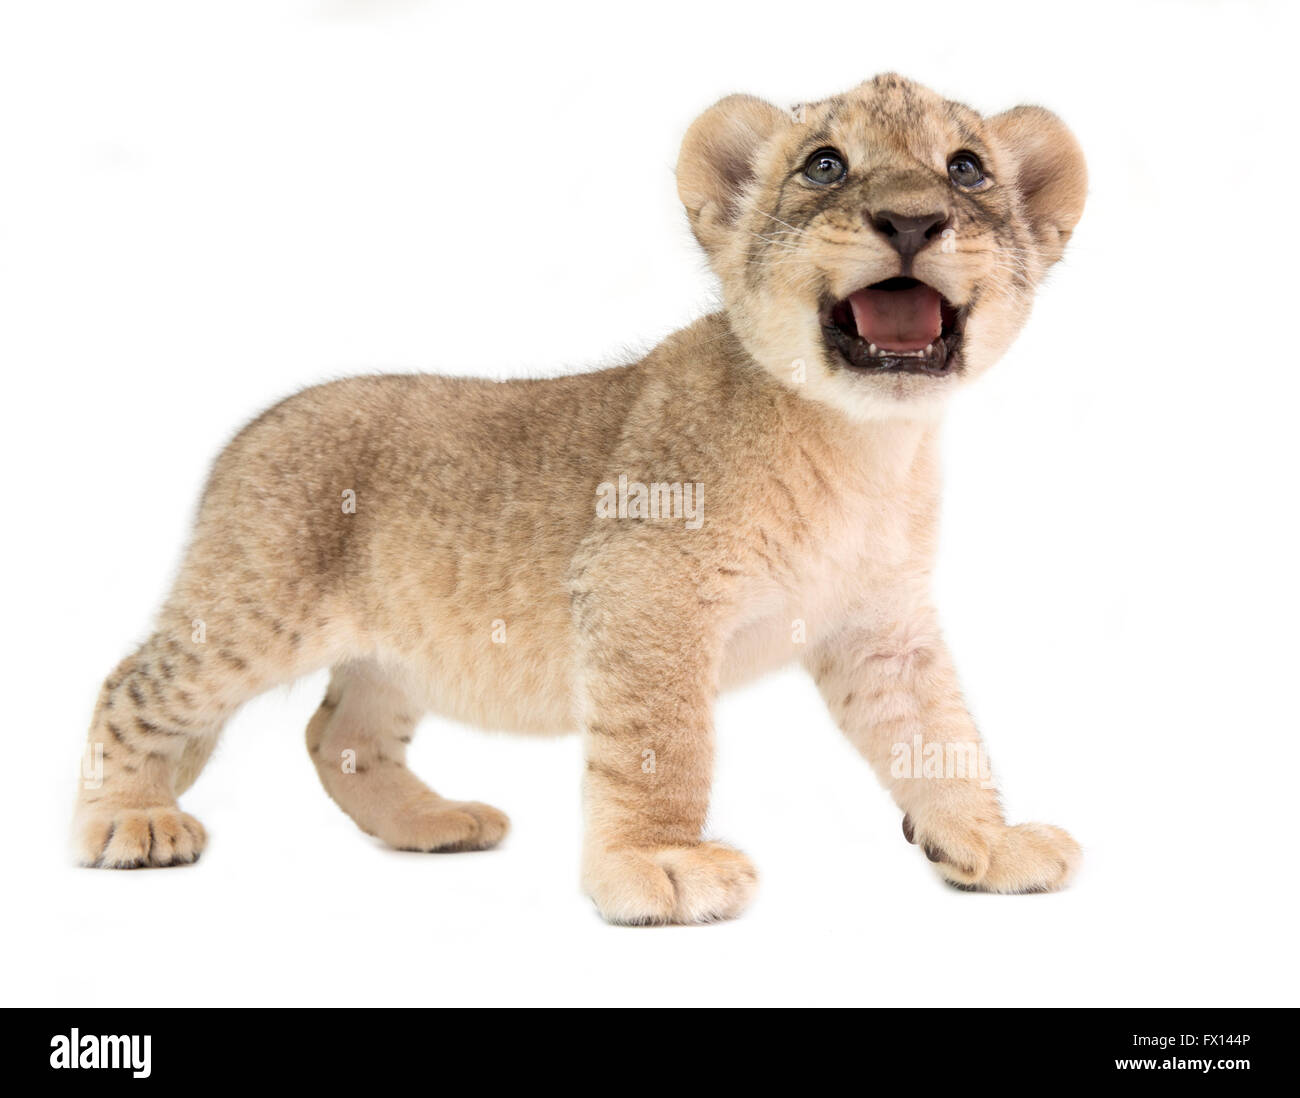 baby lion (panthera leo) isolated on white background Stock Photo